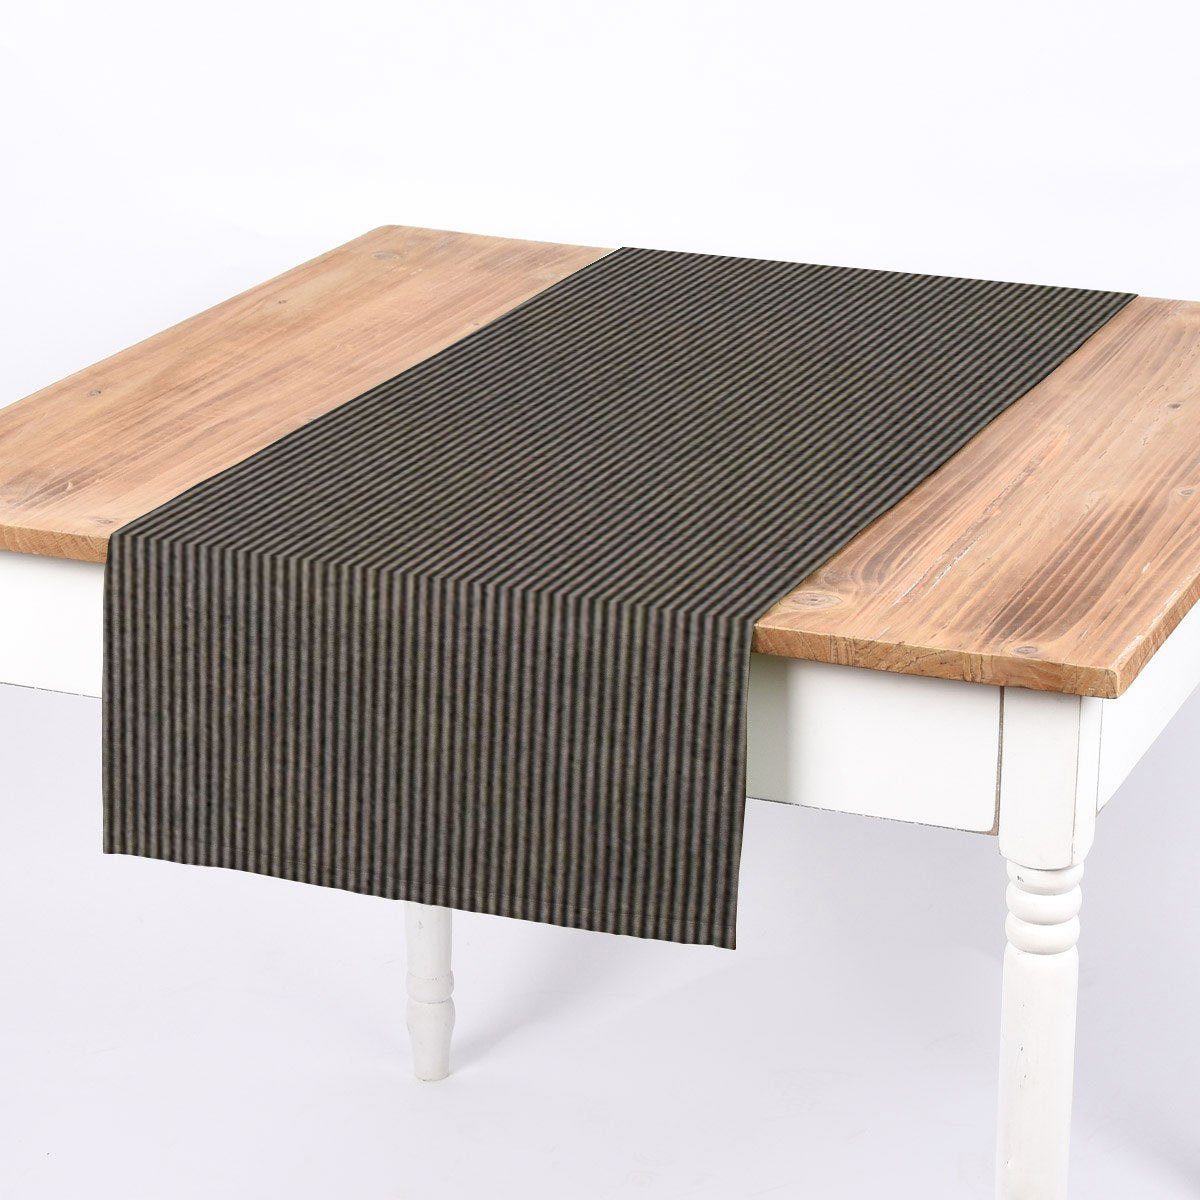 SCHÖNER LEBEN. Tischläufer SCHÖNER LEBEN. Tischläufer Streifen 3mm beige schwarz 40x160cm, handmade | Tischläufer